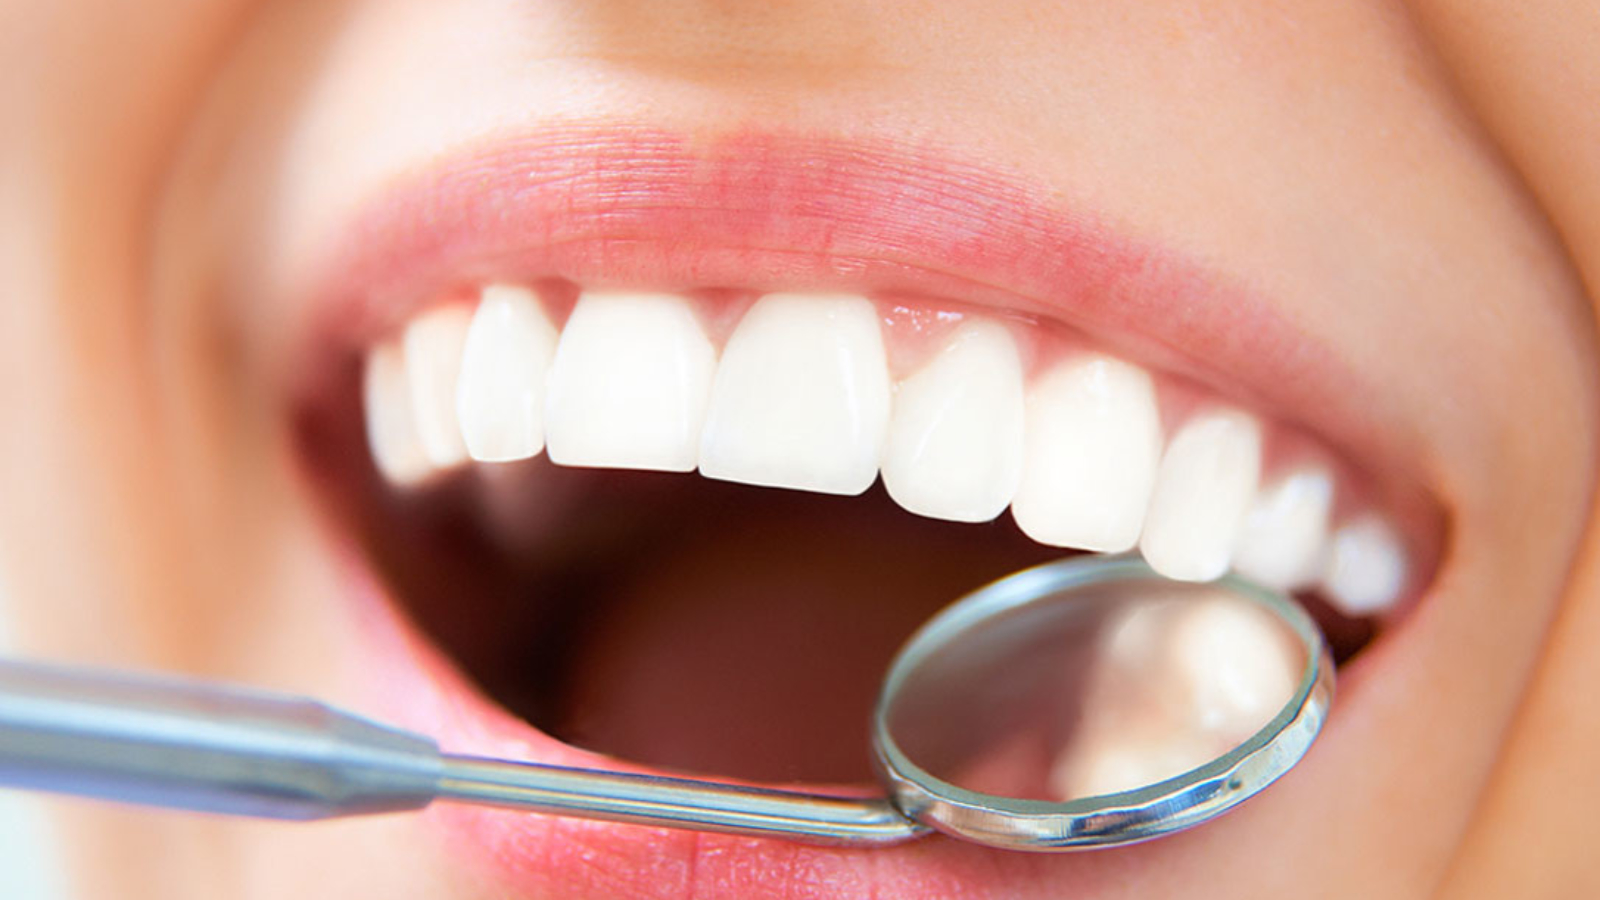 تجميل الأسنان في تركيا - احدث الطرق والتكاليف | Jawad Medical